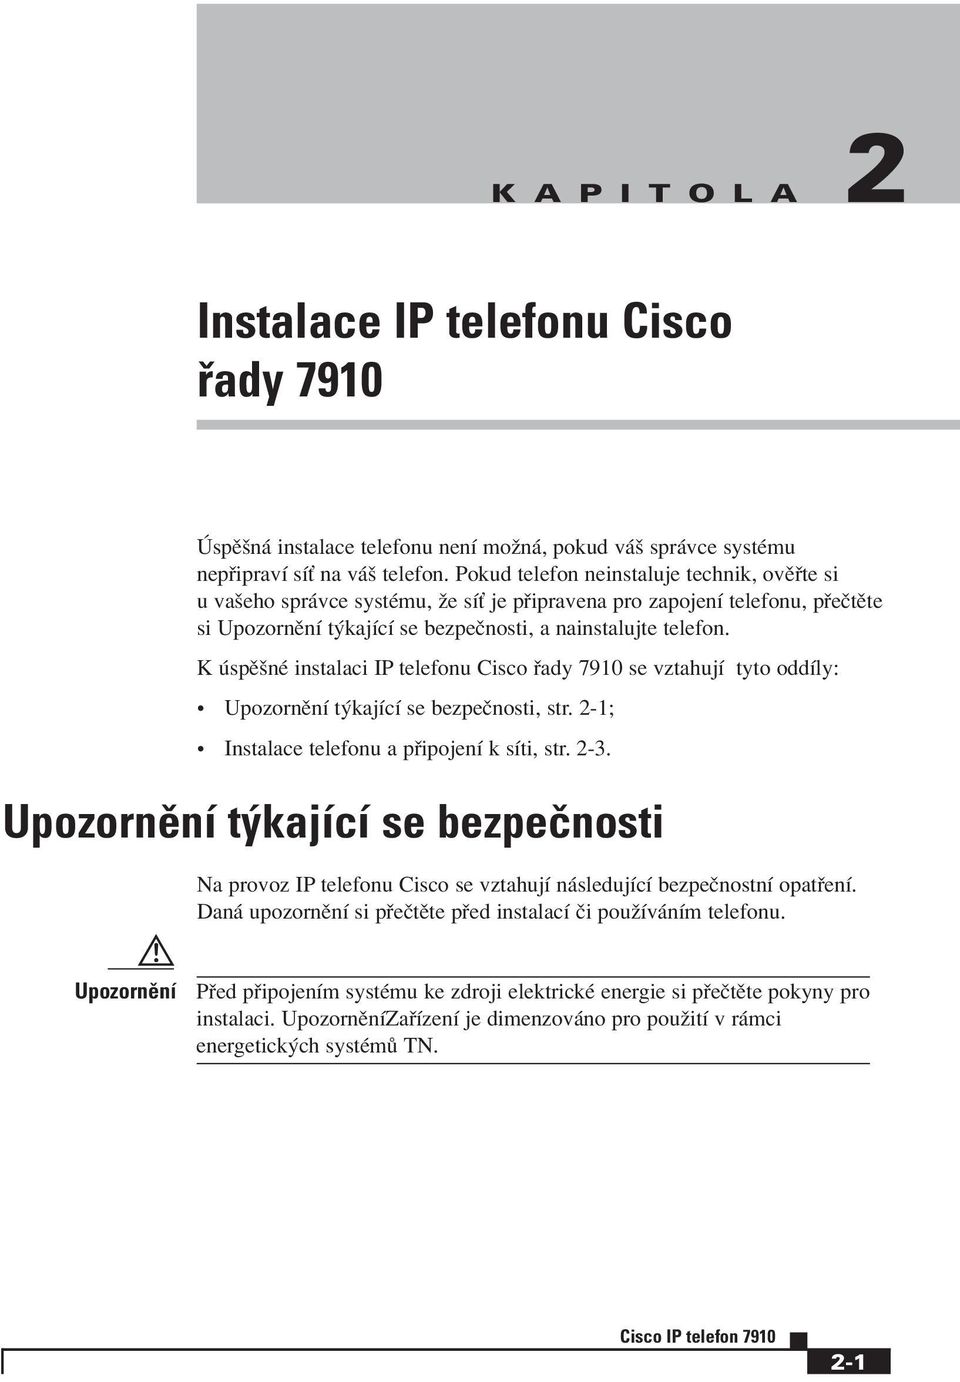 K spïönè instalaci IP telefonu Cisco ady 7910 se vztahujì tyto oddìly: ï UpozornÏnÌ t kajìcì se bezpeënosti, str. 2-1; ï Instalace telefonu a p ipojenì k sìti, str. 2-3.